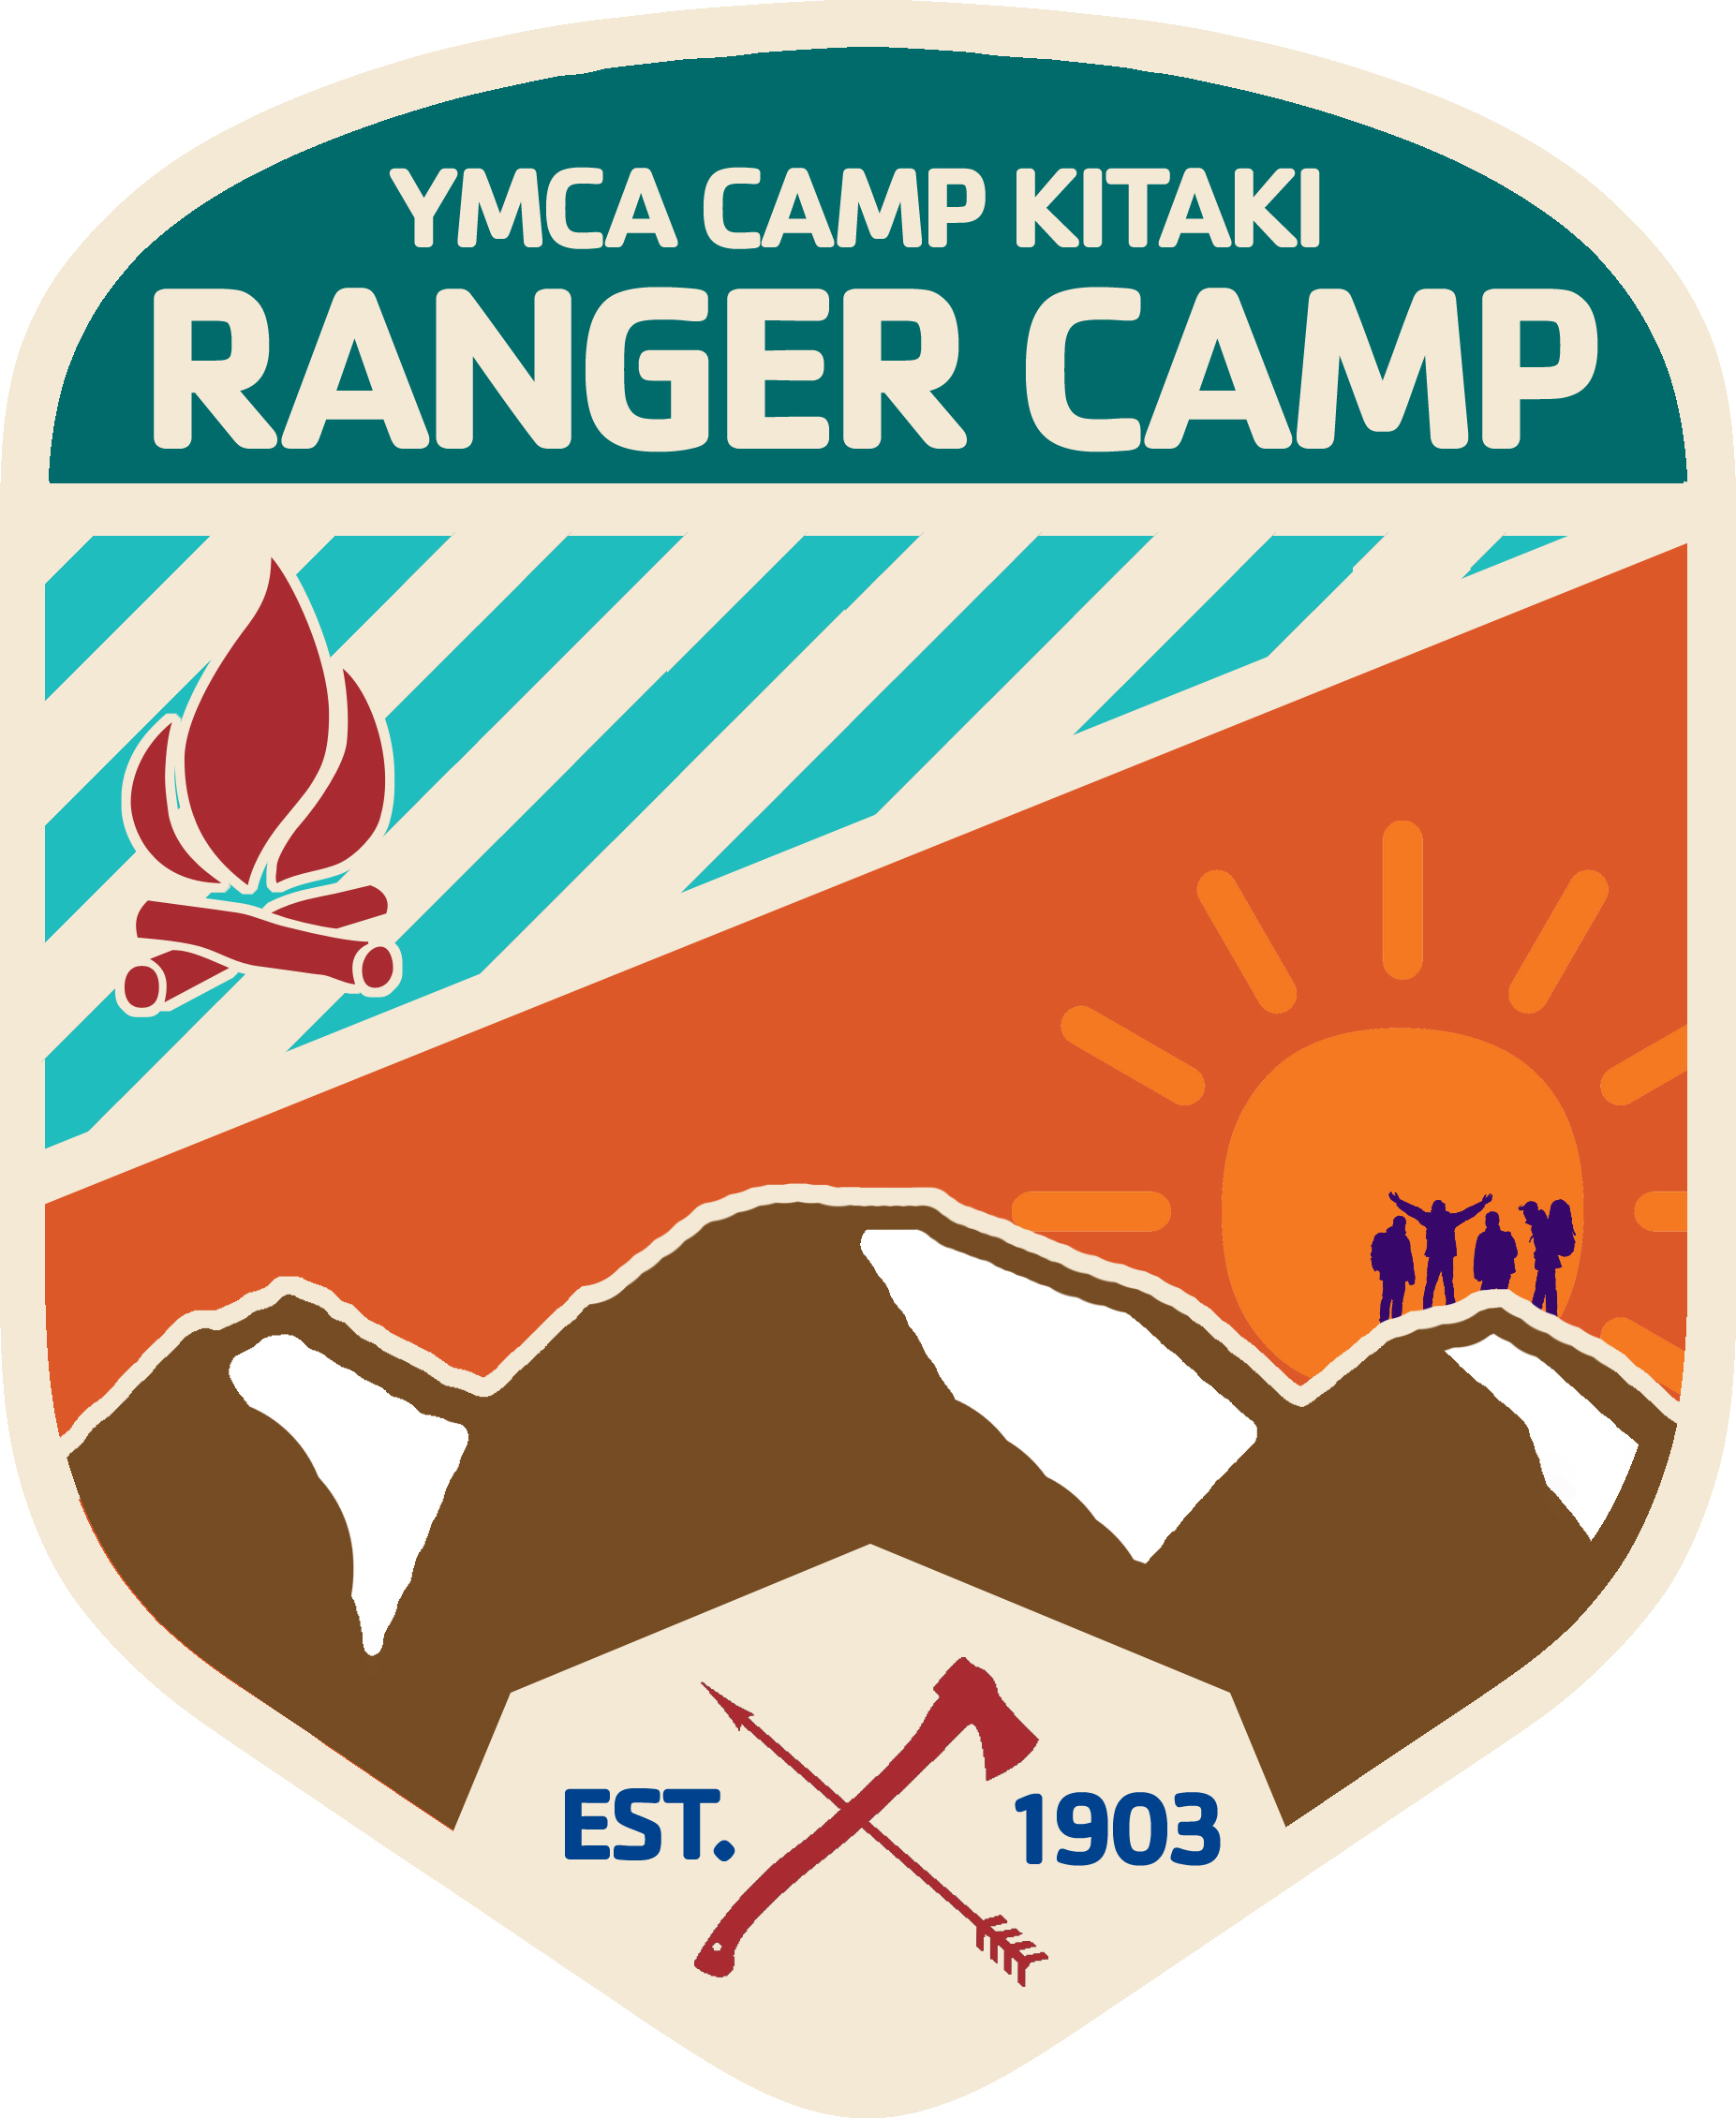 A program badge for Ranger Camp